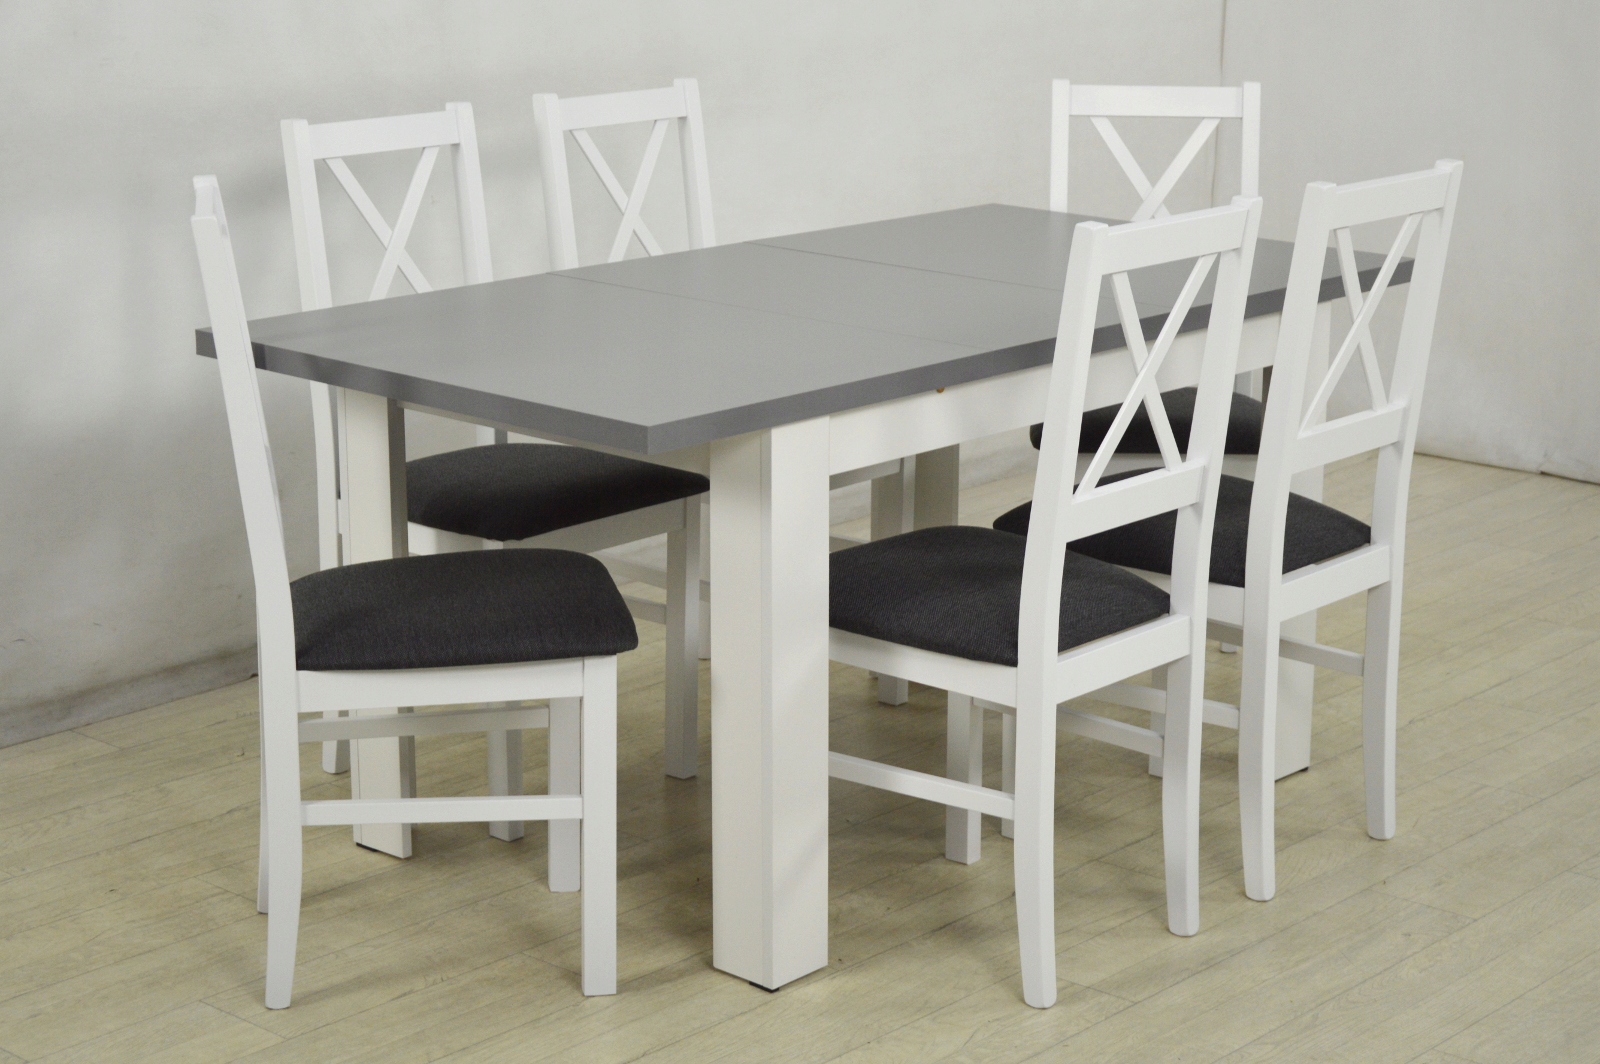 белый стол с серыми стульями